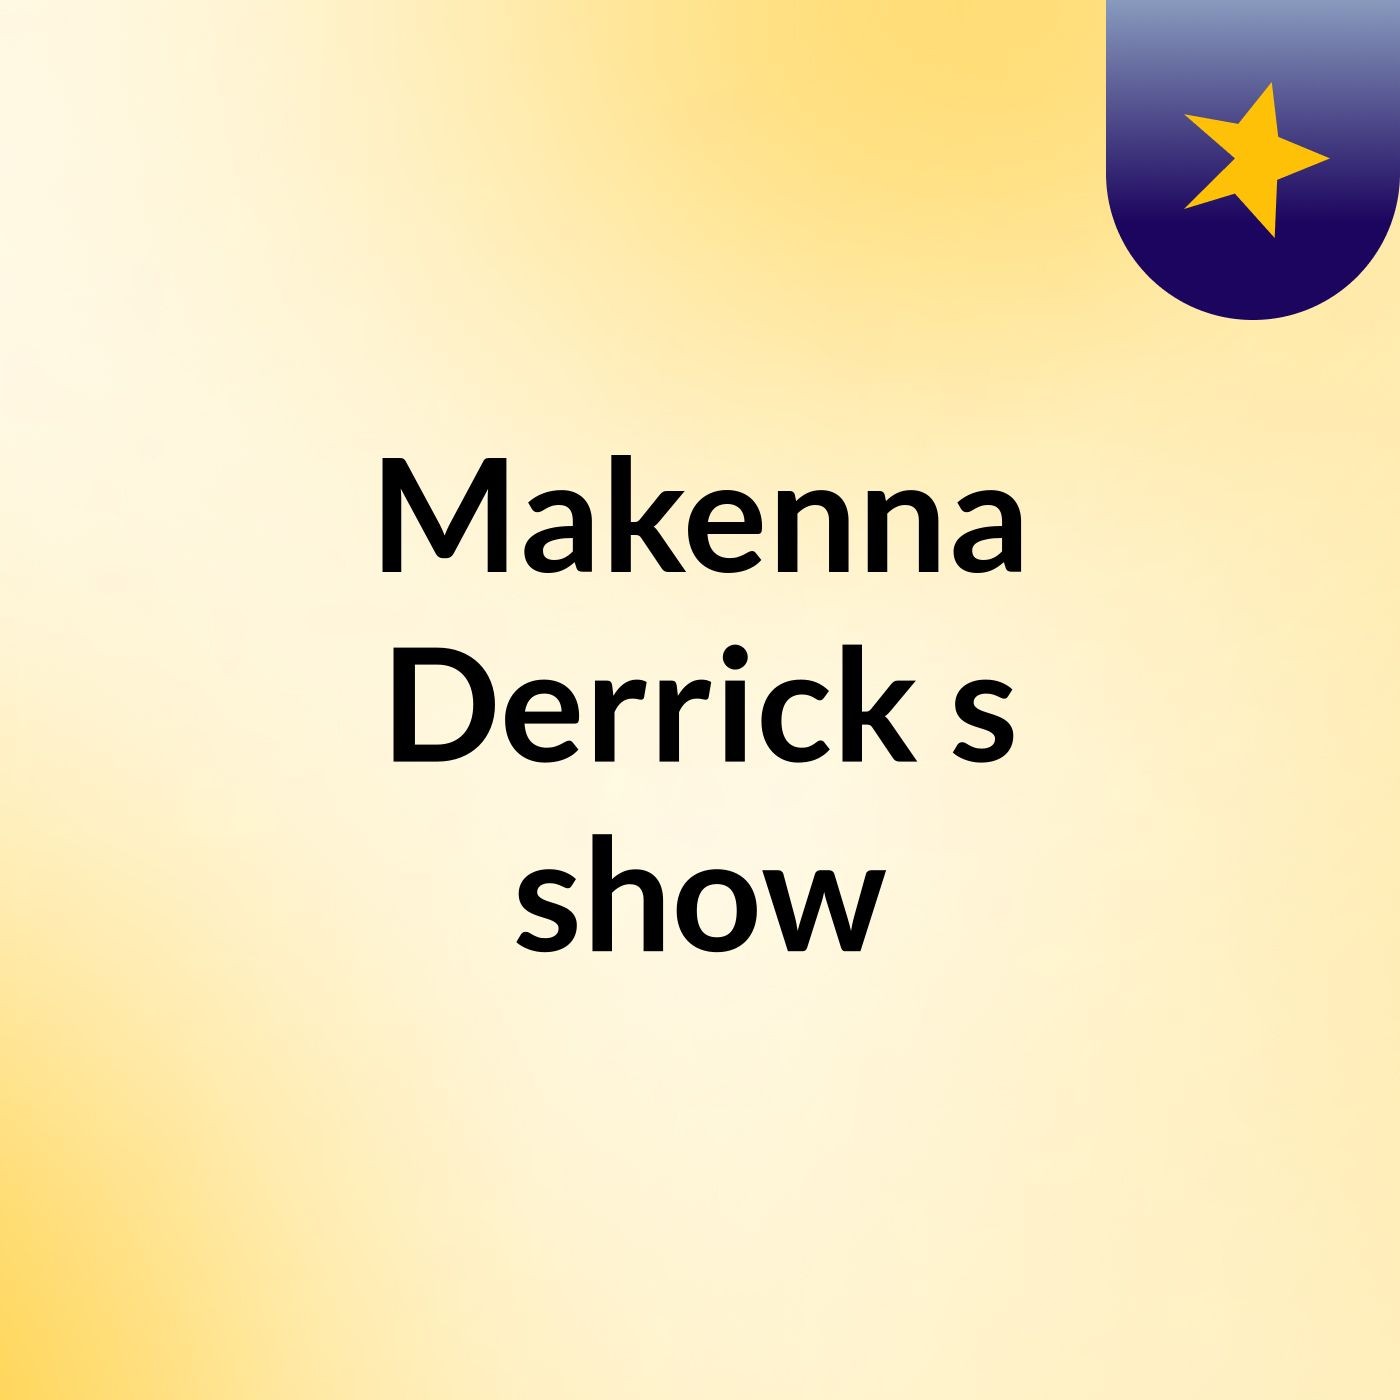 Episode 3 - Makenna Derrick's show